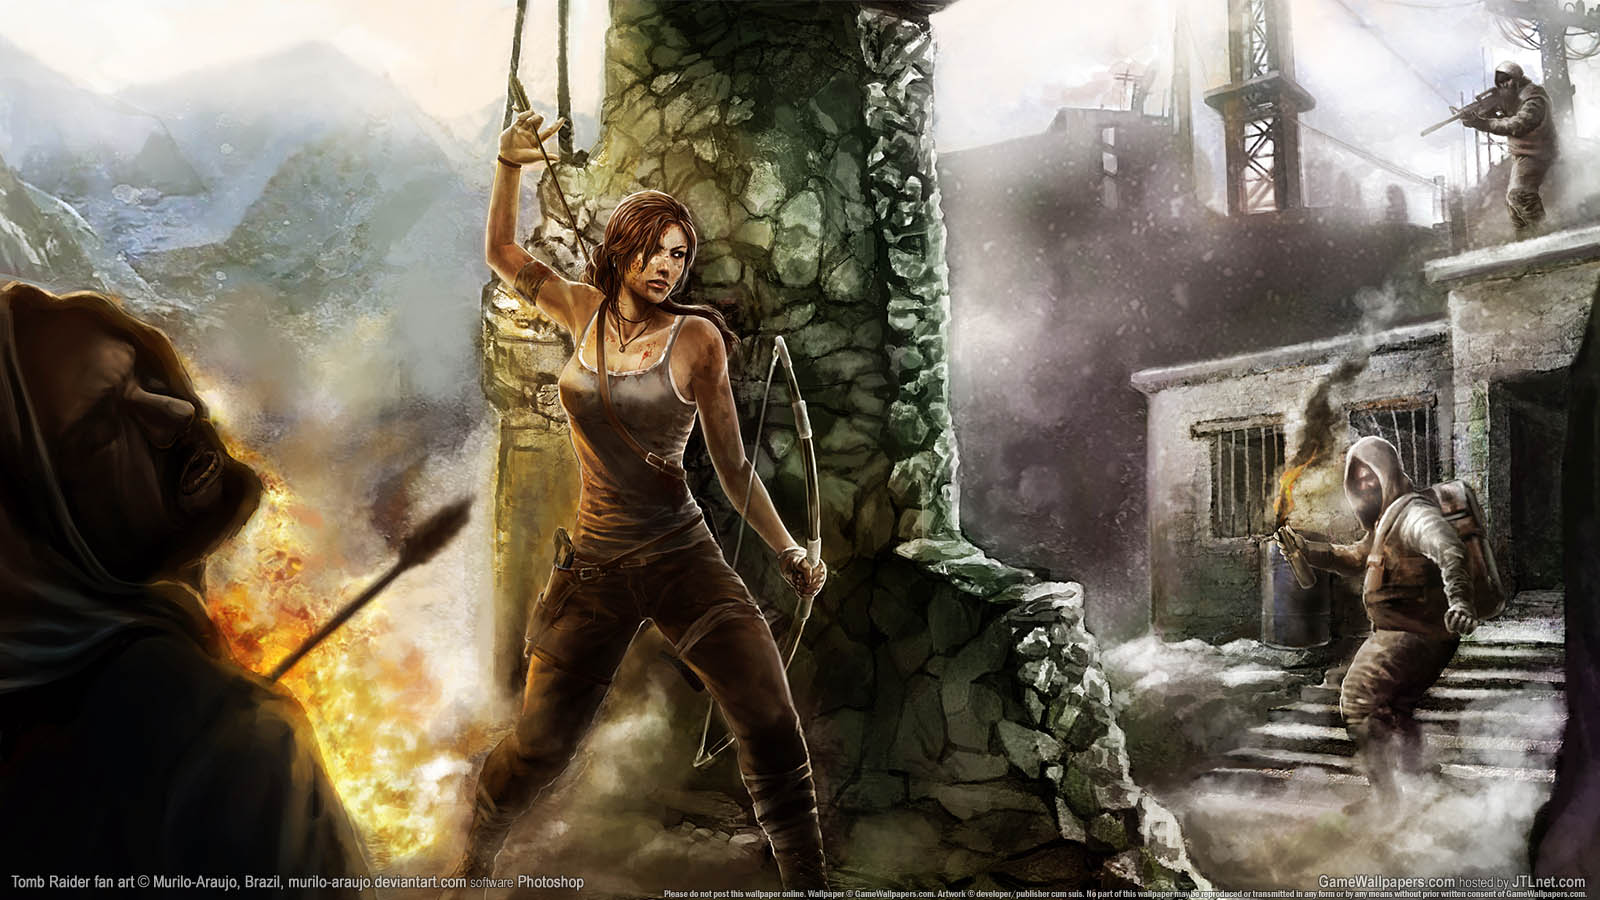 Tomb Raider fan art fond d'cran 02 1600x900